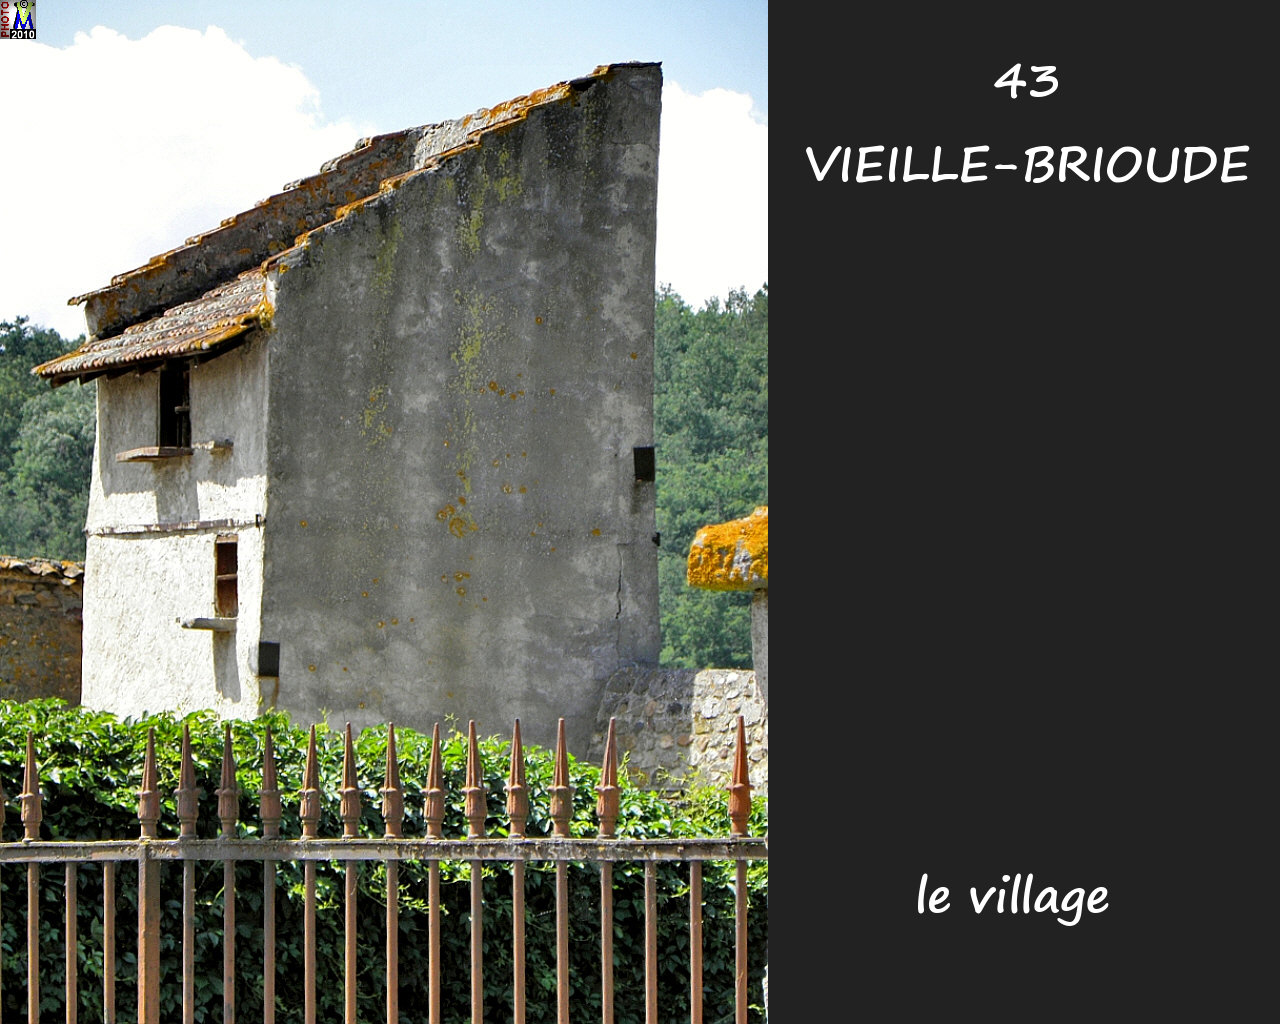 43VIEILLE-BRIOUDE_village_140.jpg